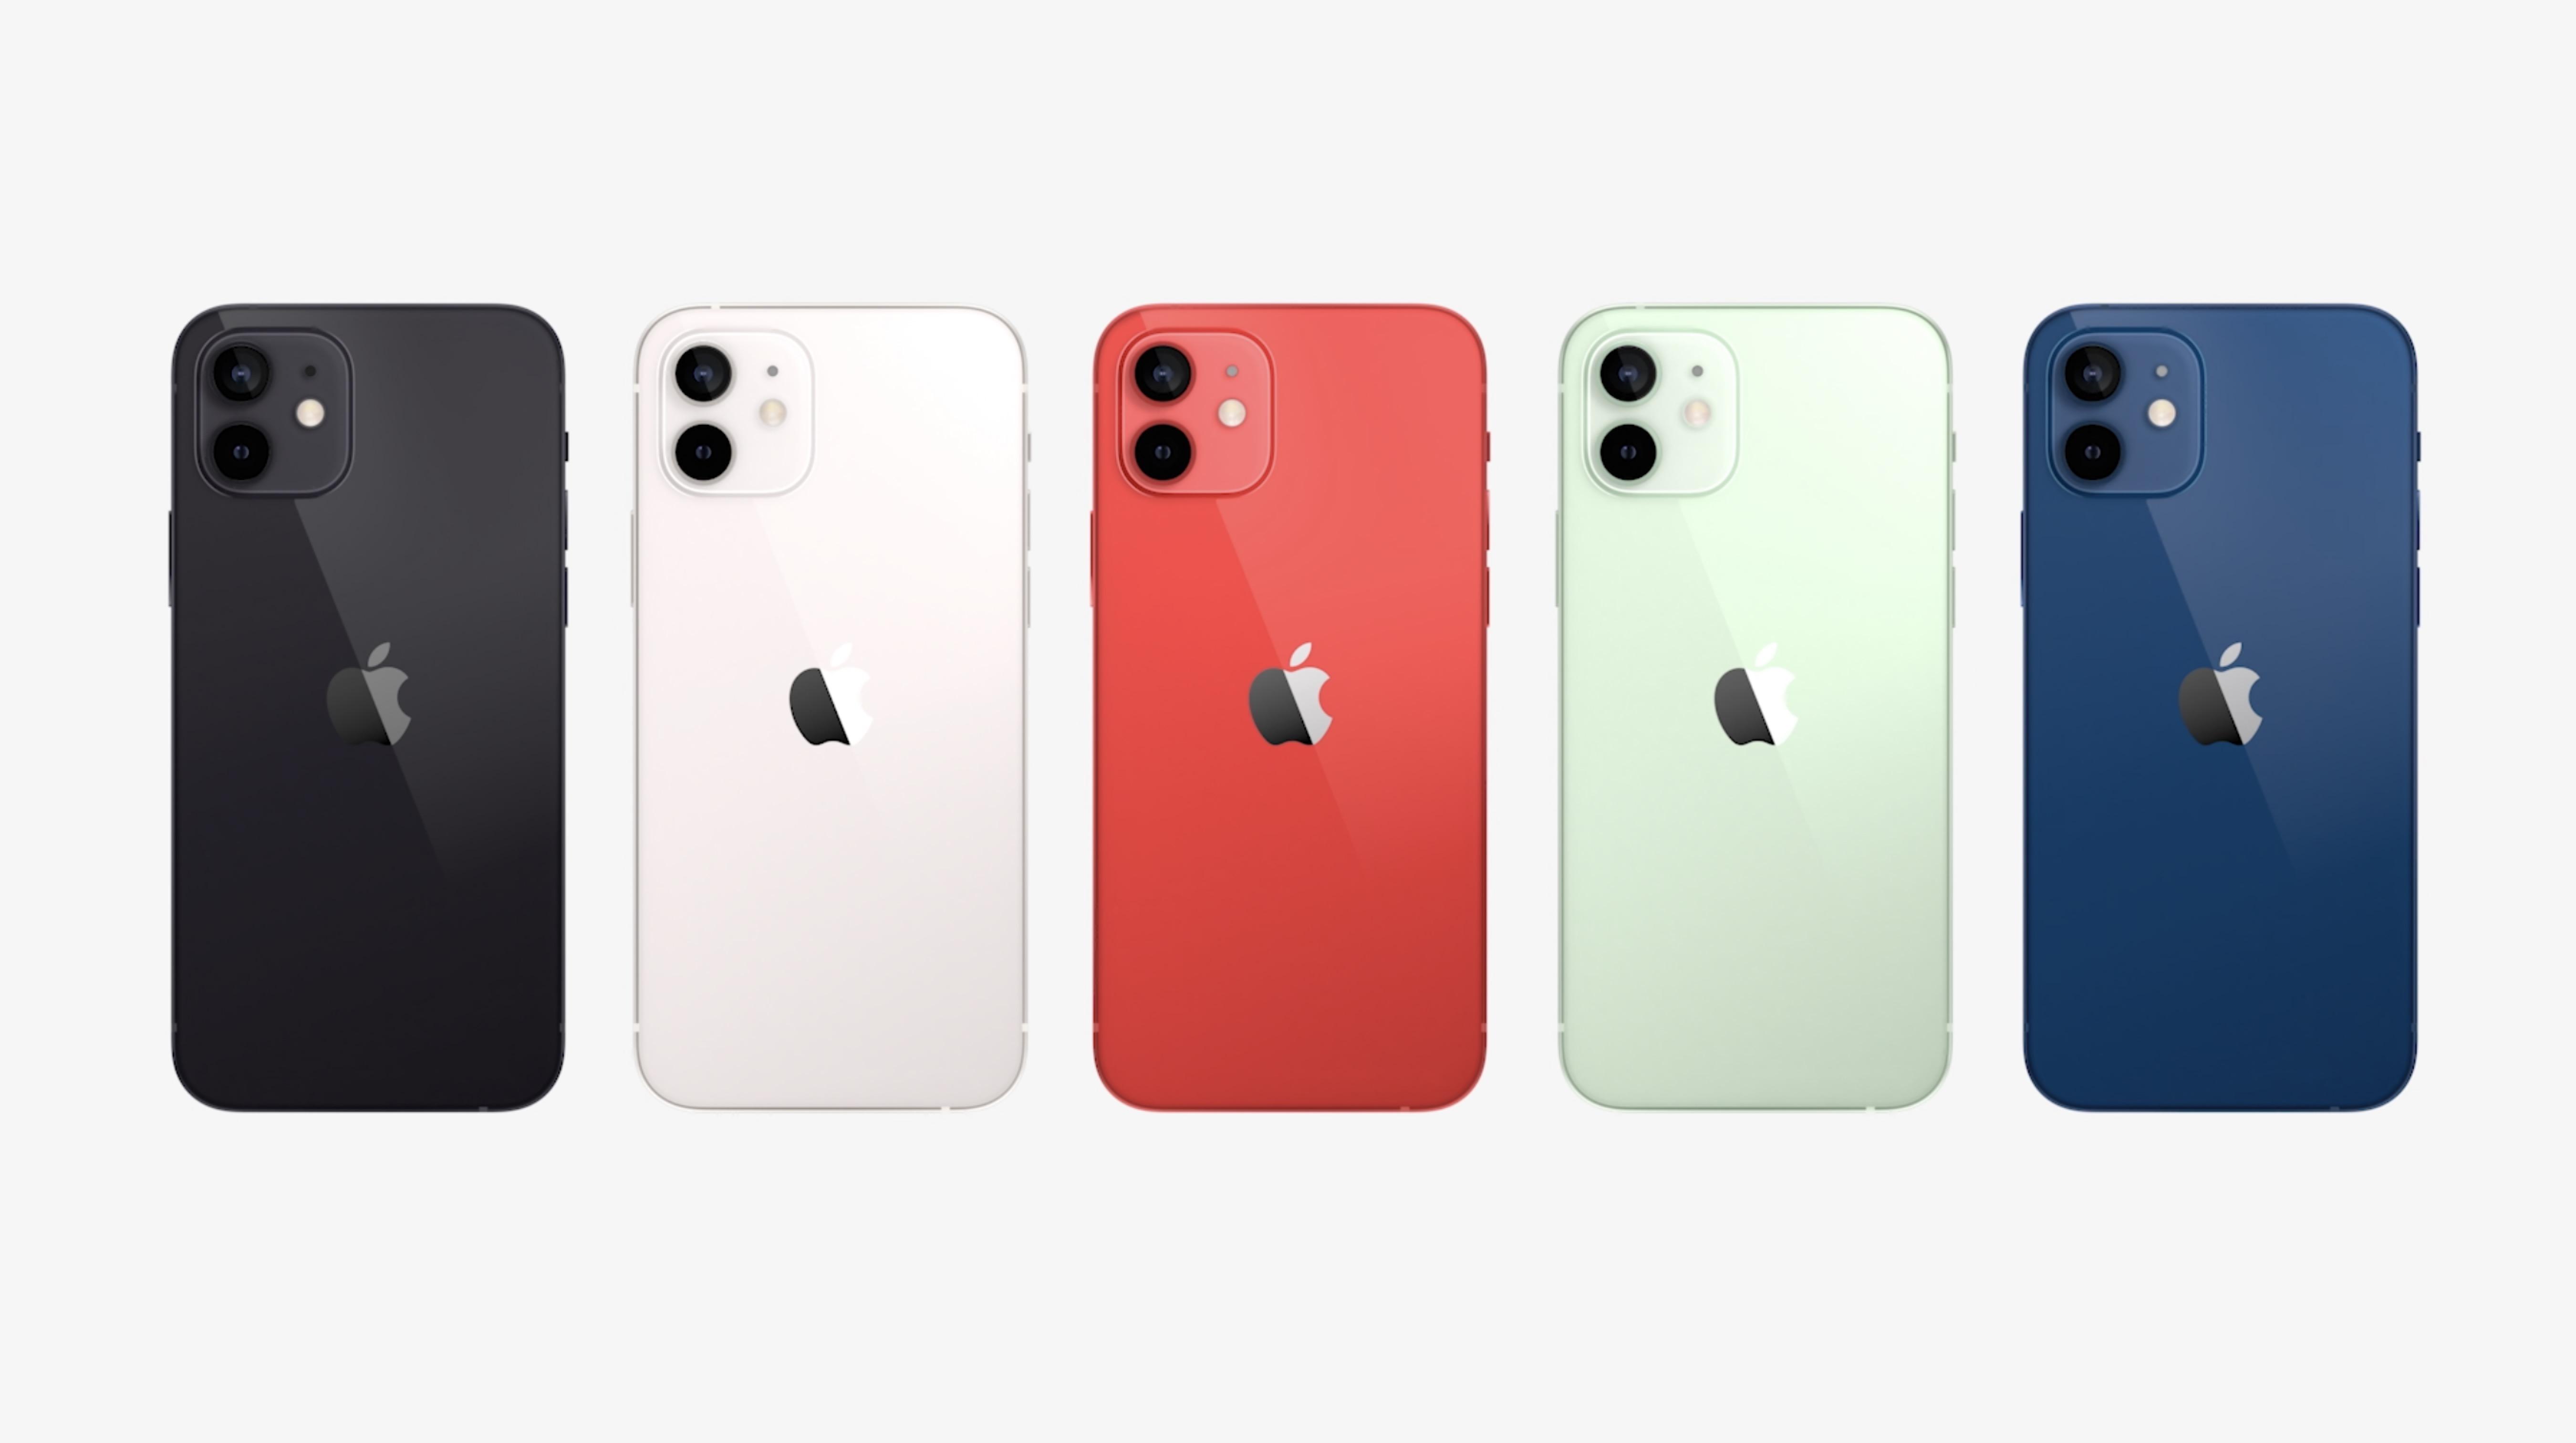 きょう発表されたiPhone 12とかまとめ #AppleEvent【ライブ更新終了